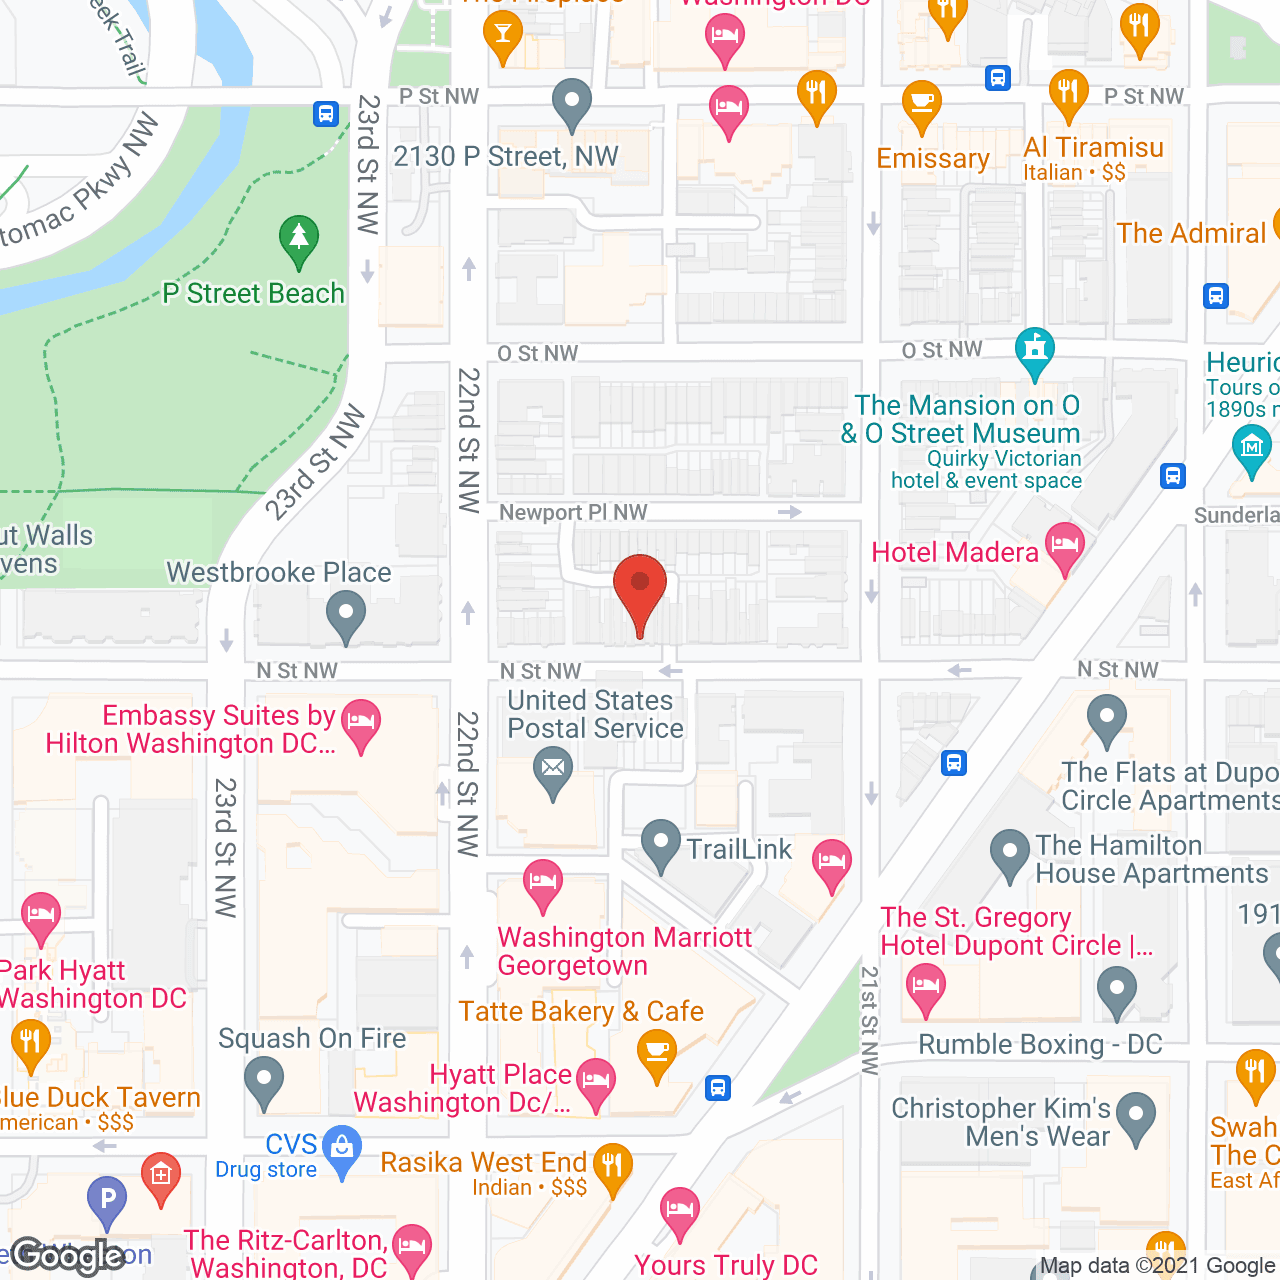 TheKey of Washington, DC in google map